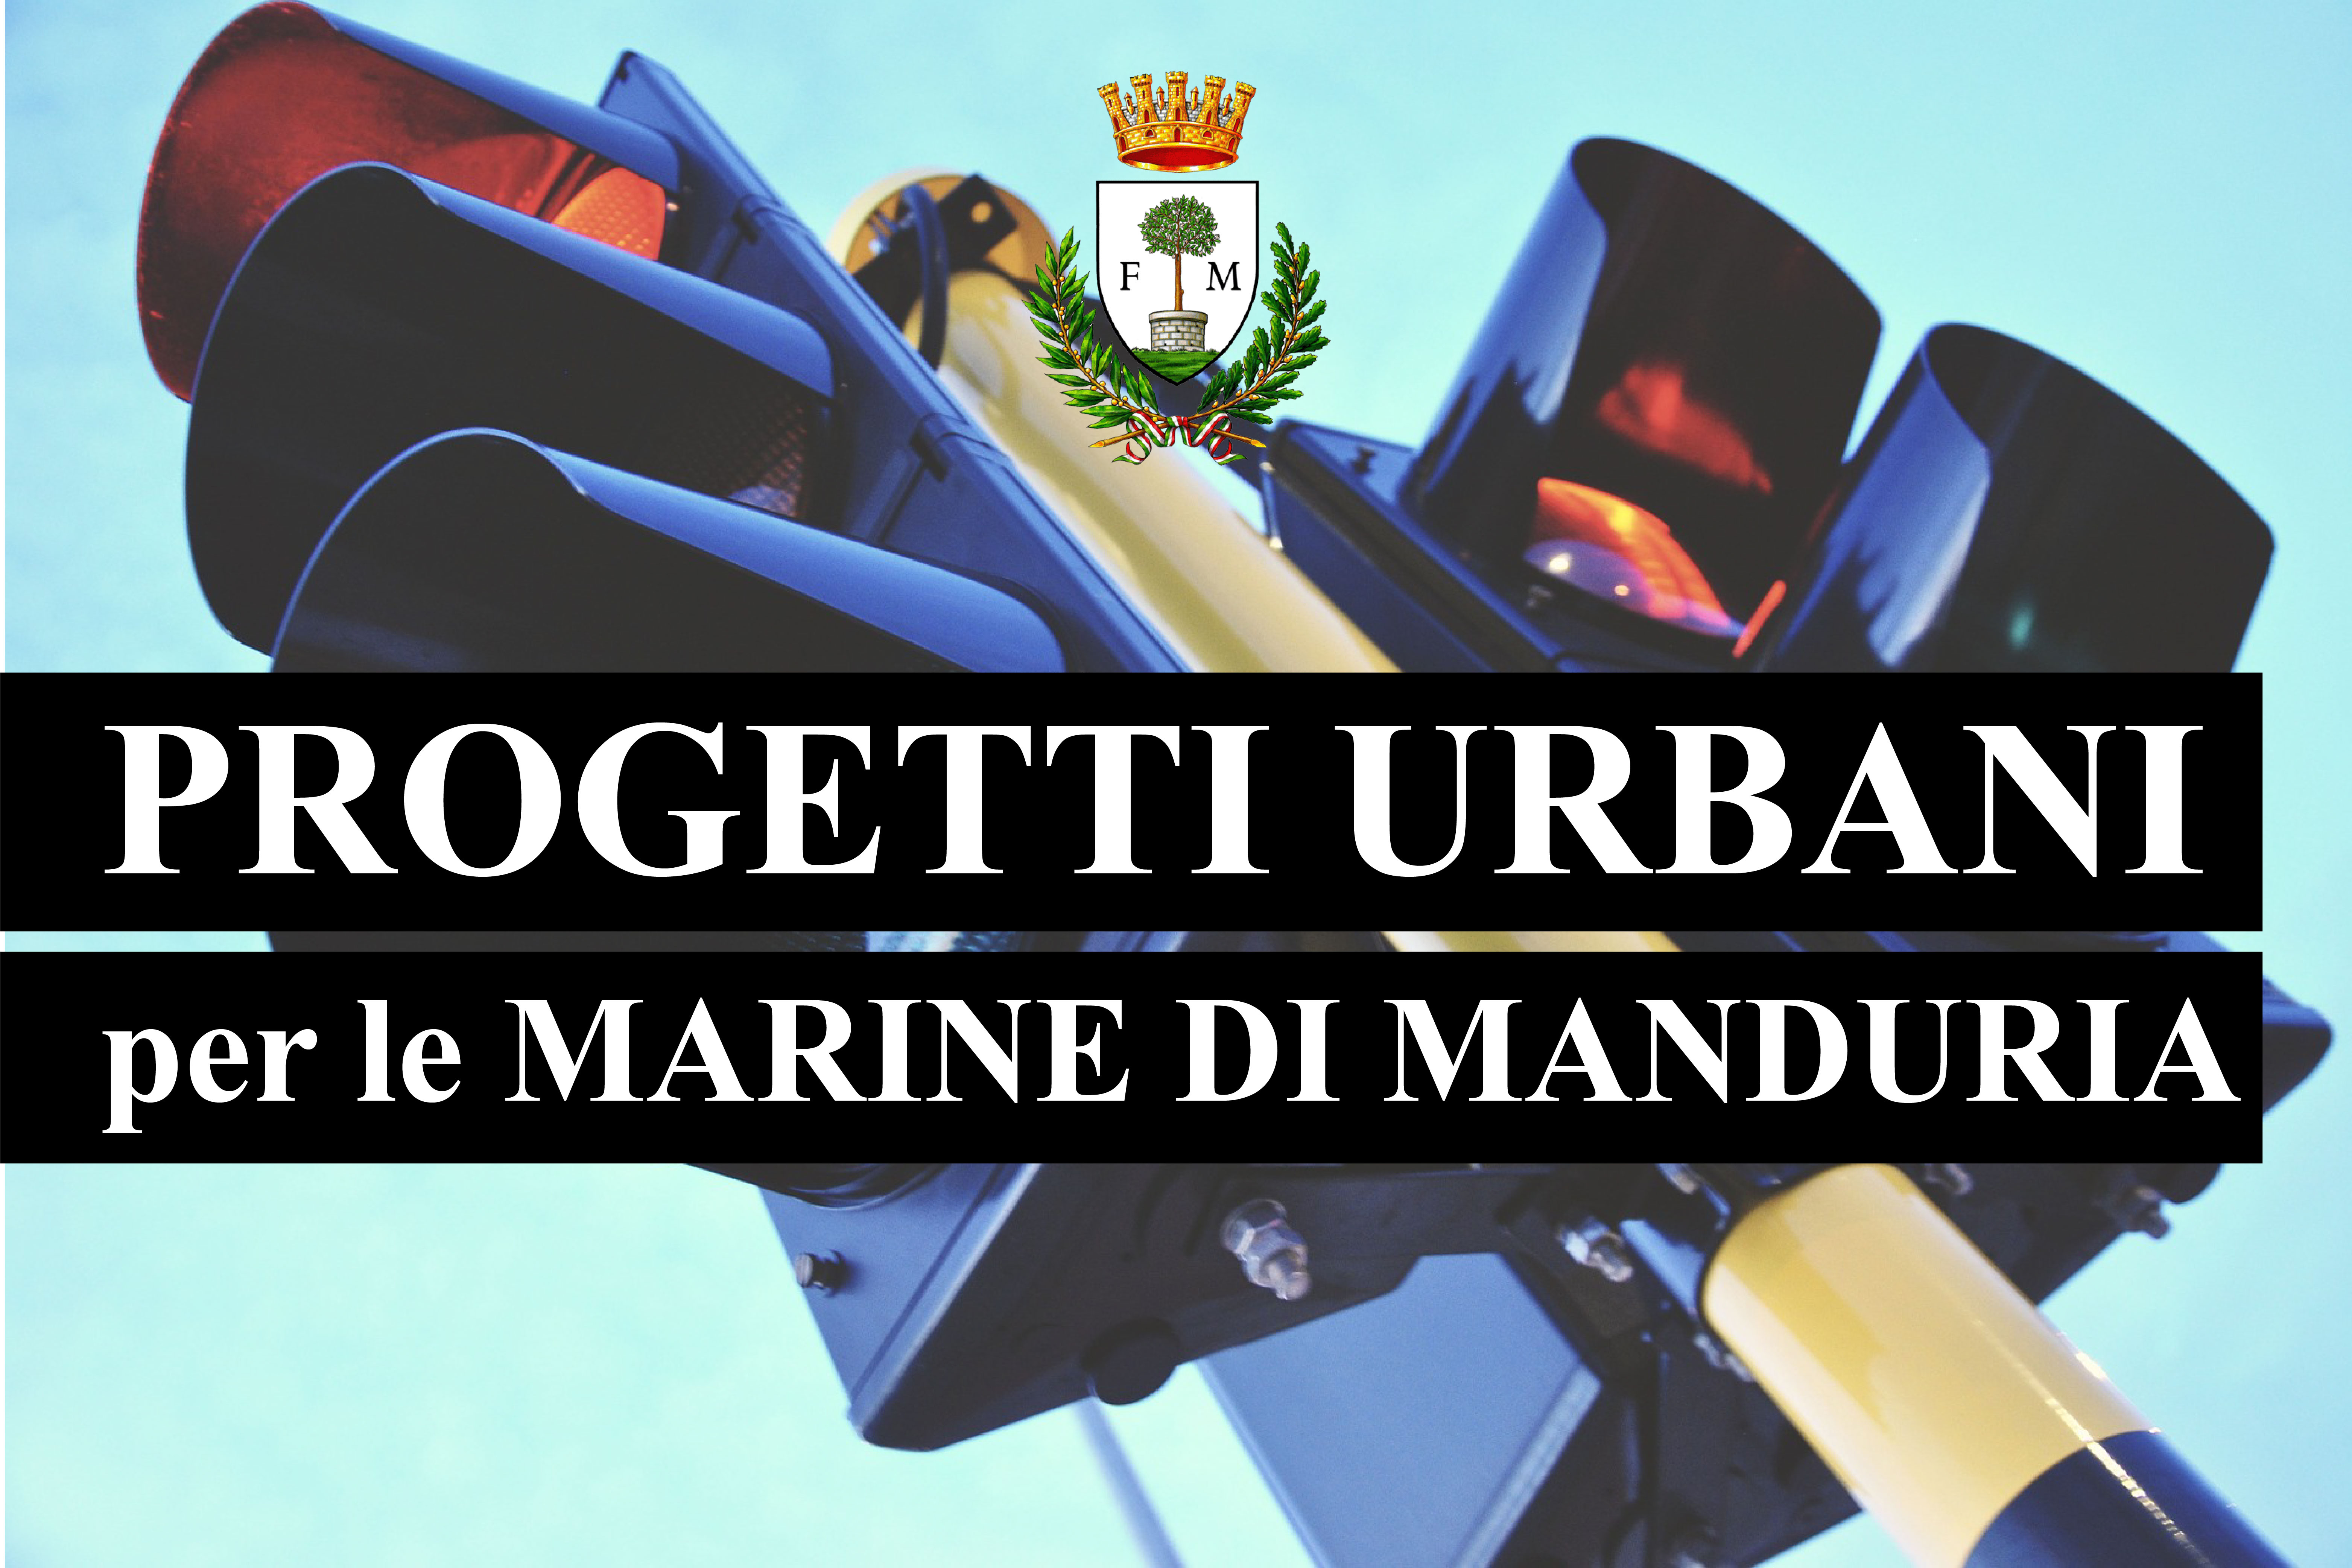 MANDURIA. Finanziamenti dei progetti urbani per le Marine